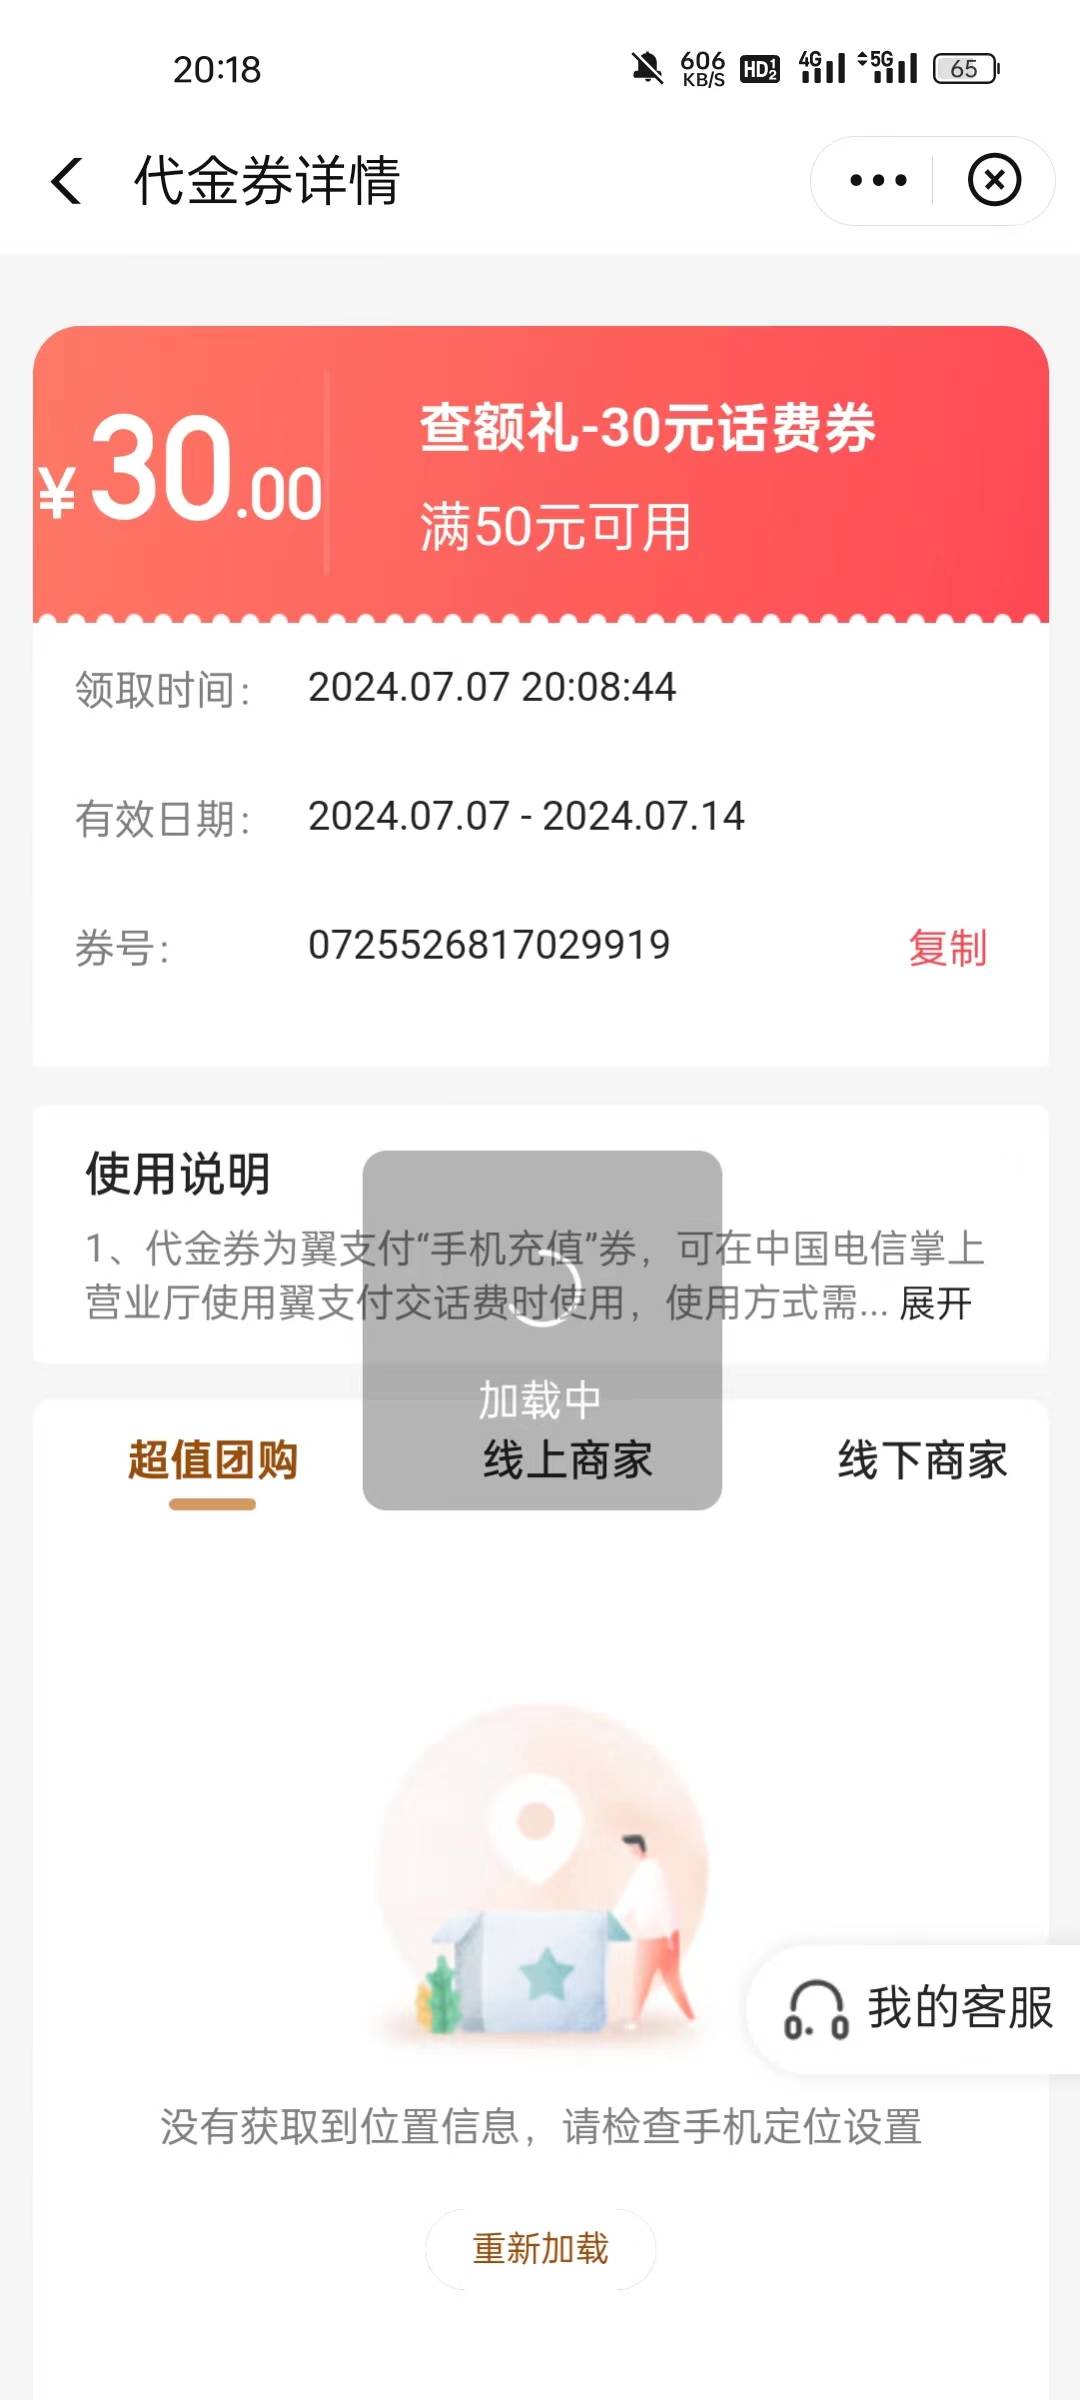 中国电信app欢GO双重话费福利活动
​查额度就有，基本人人有，
移动联通电信号码都可48 / 作者:A仙仙仙 / 